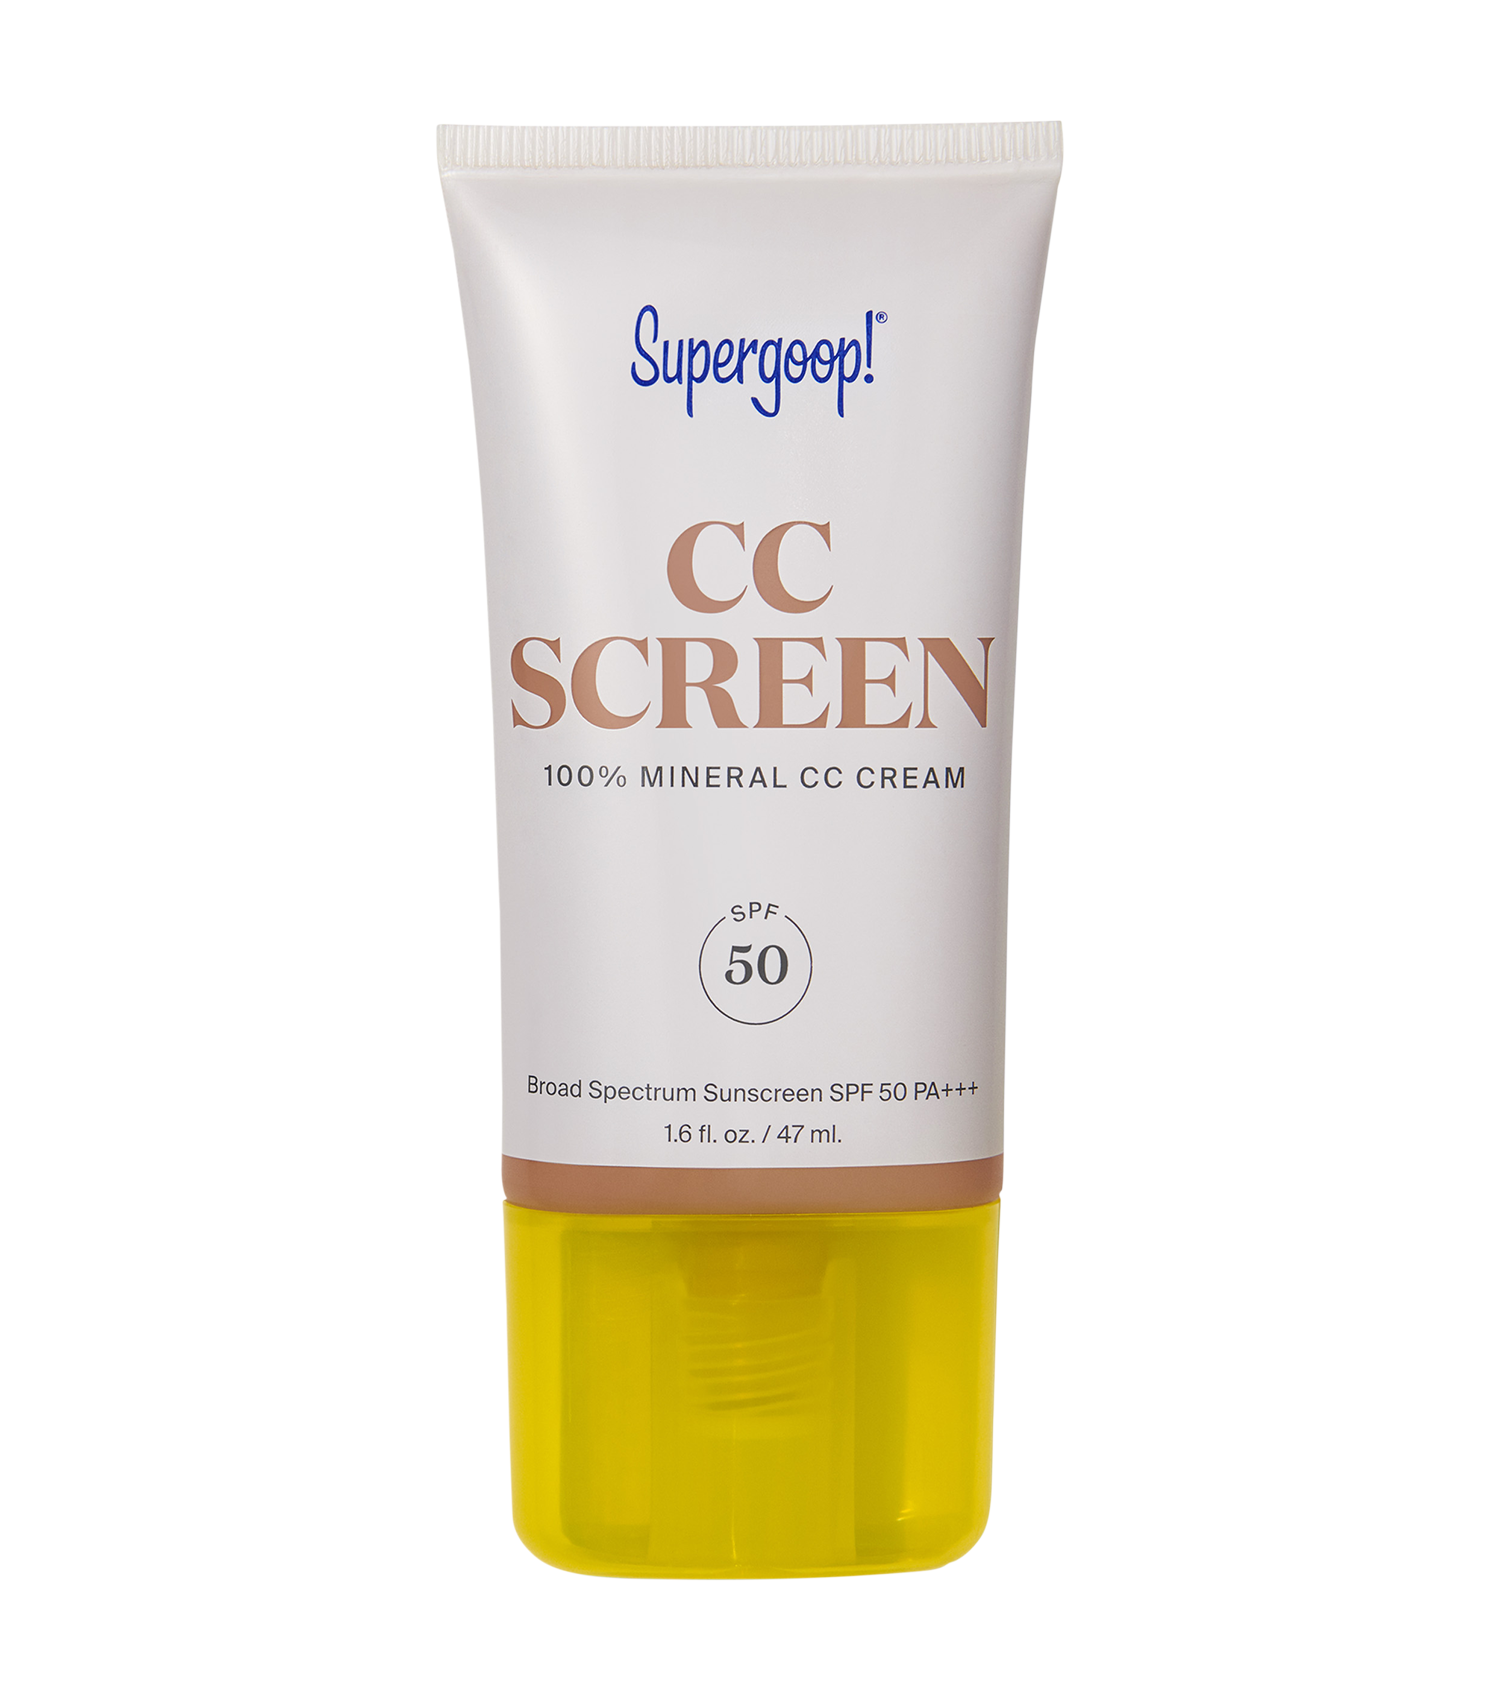 CC Screen - 100% Mineral CC Cream SPF 50